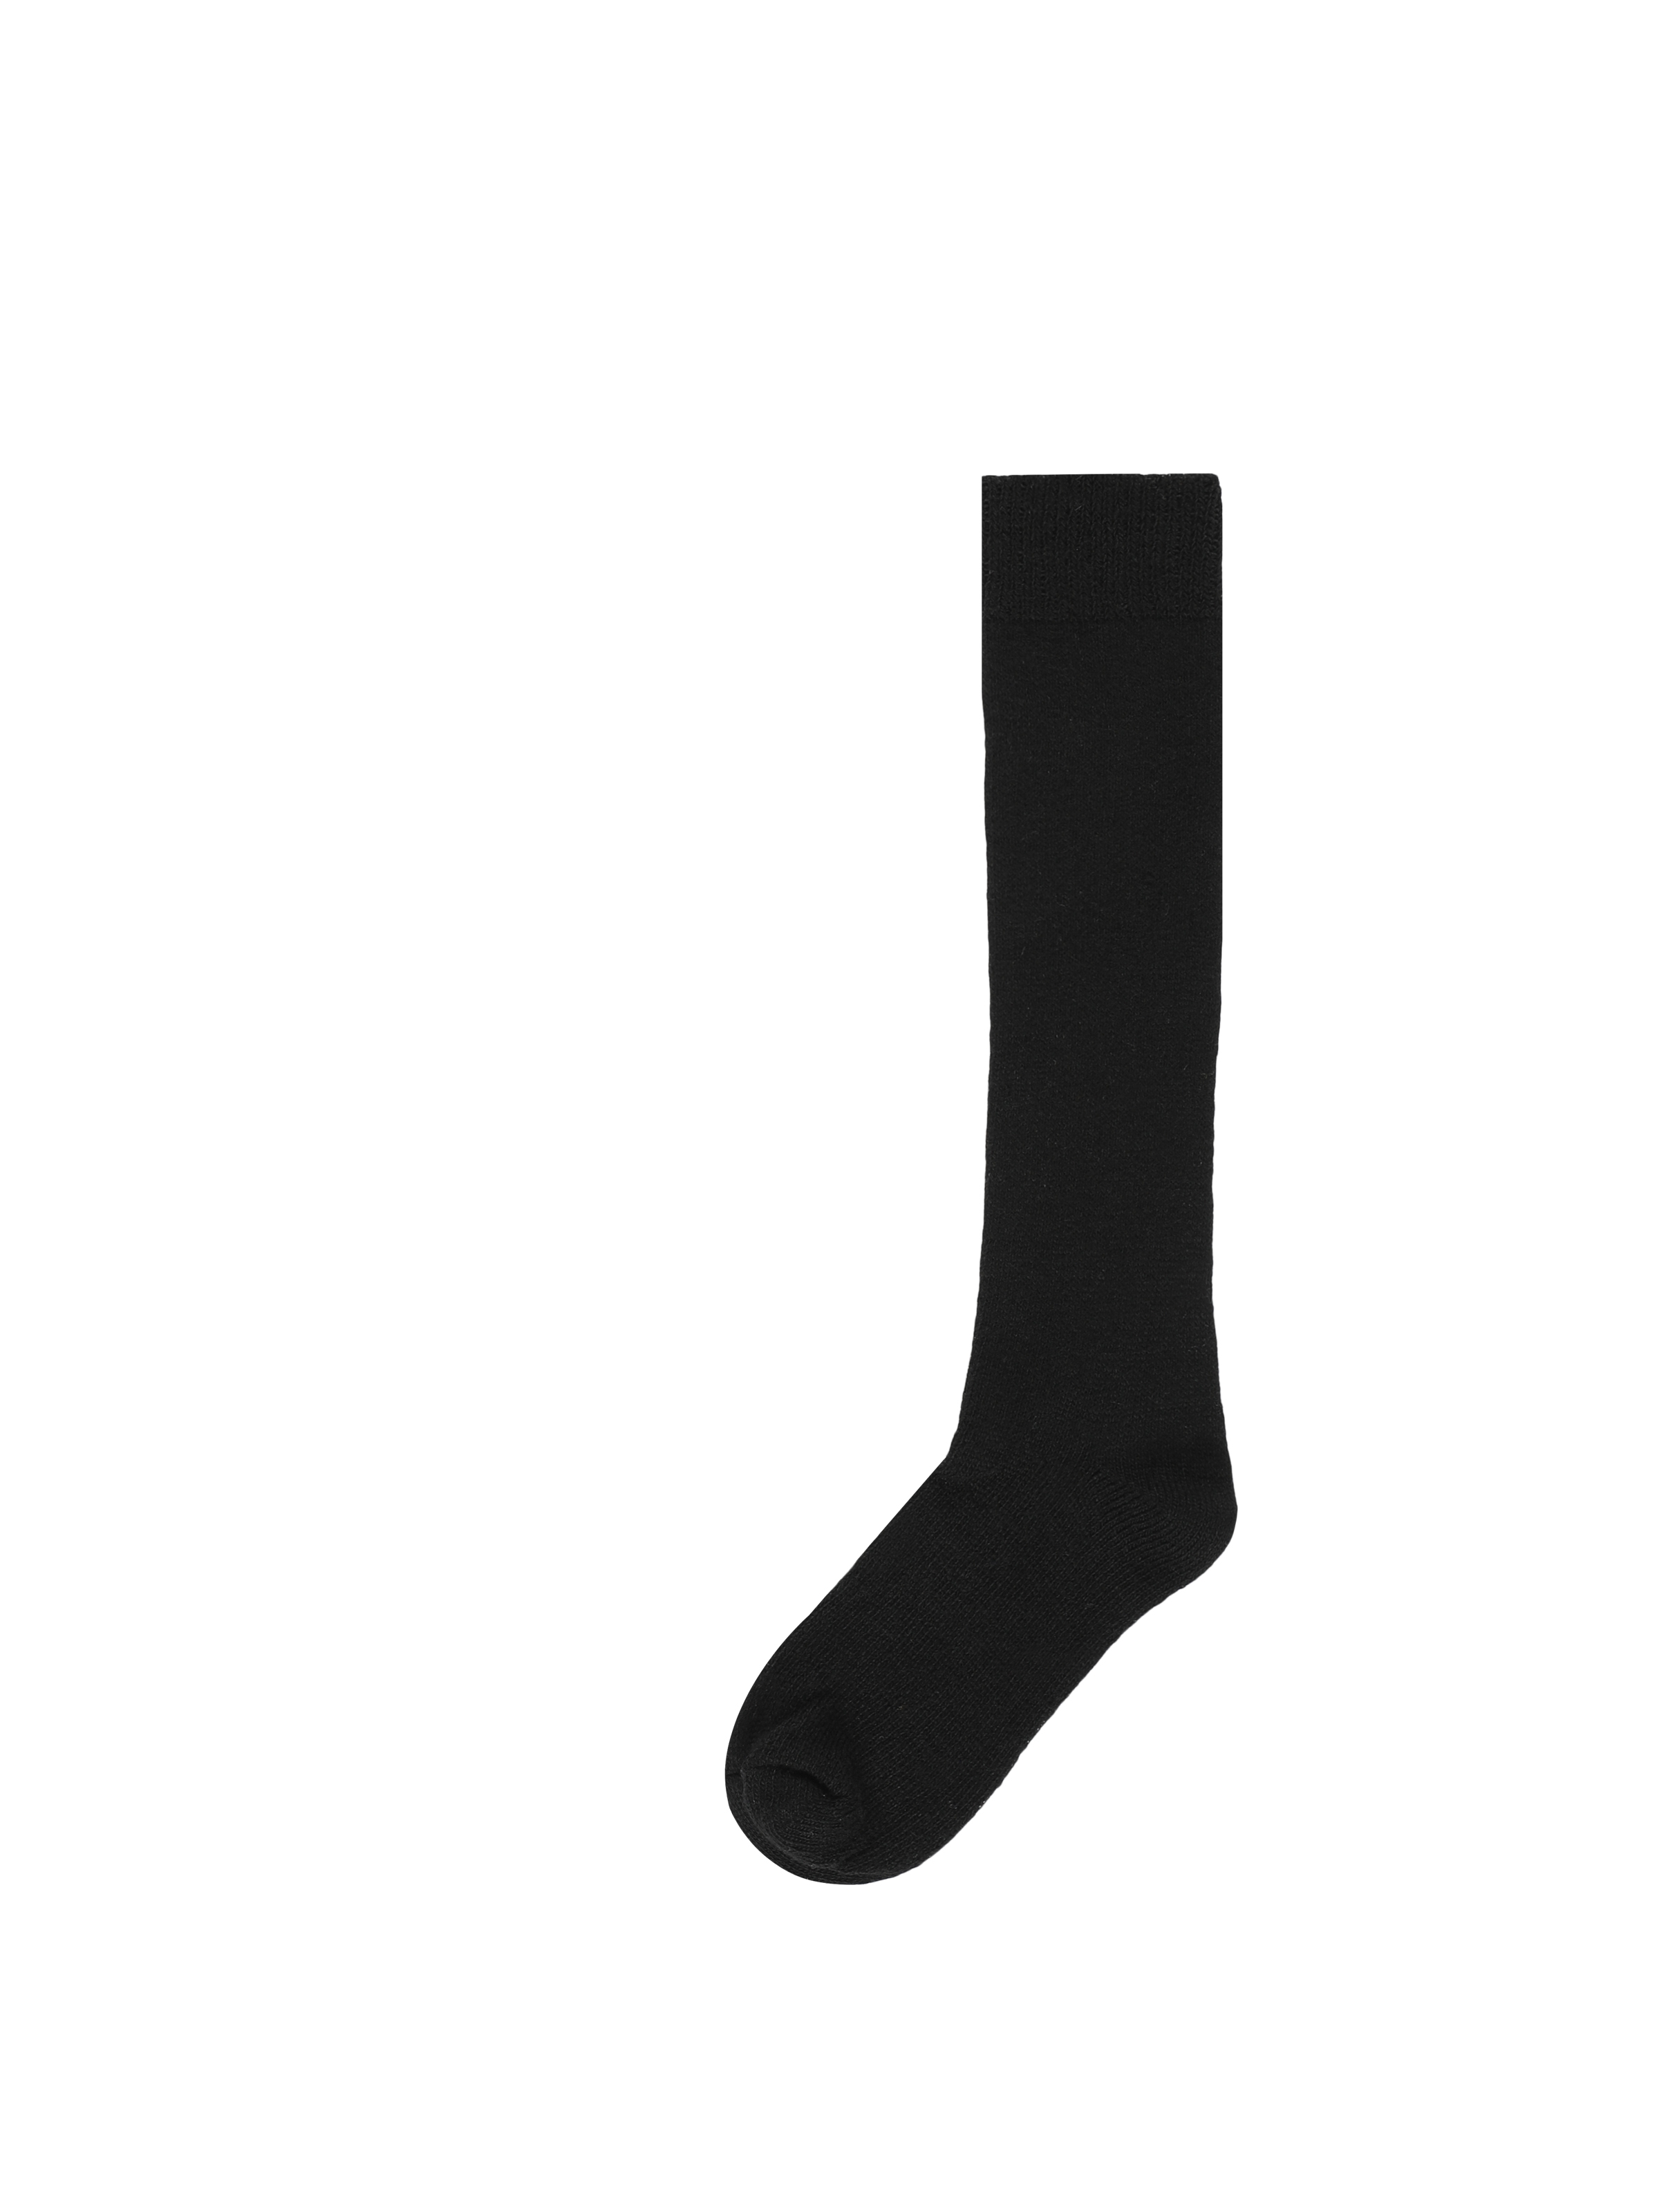 Kadın Siyah Çorap